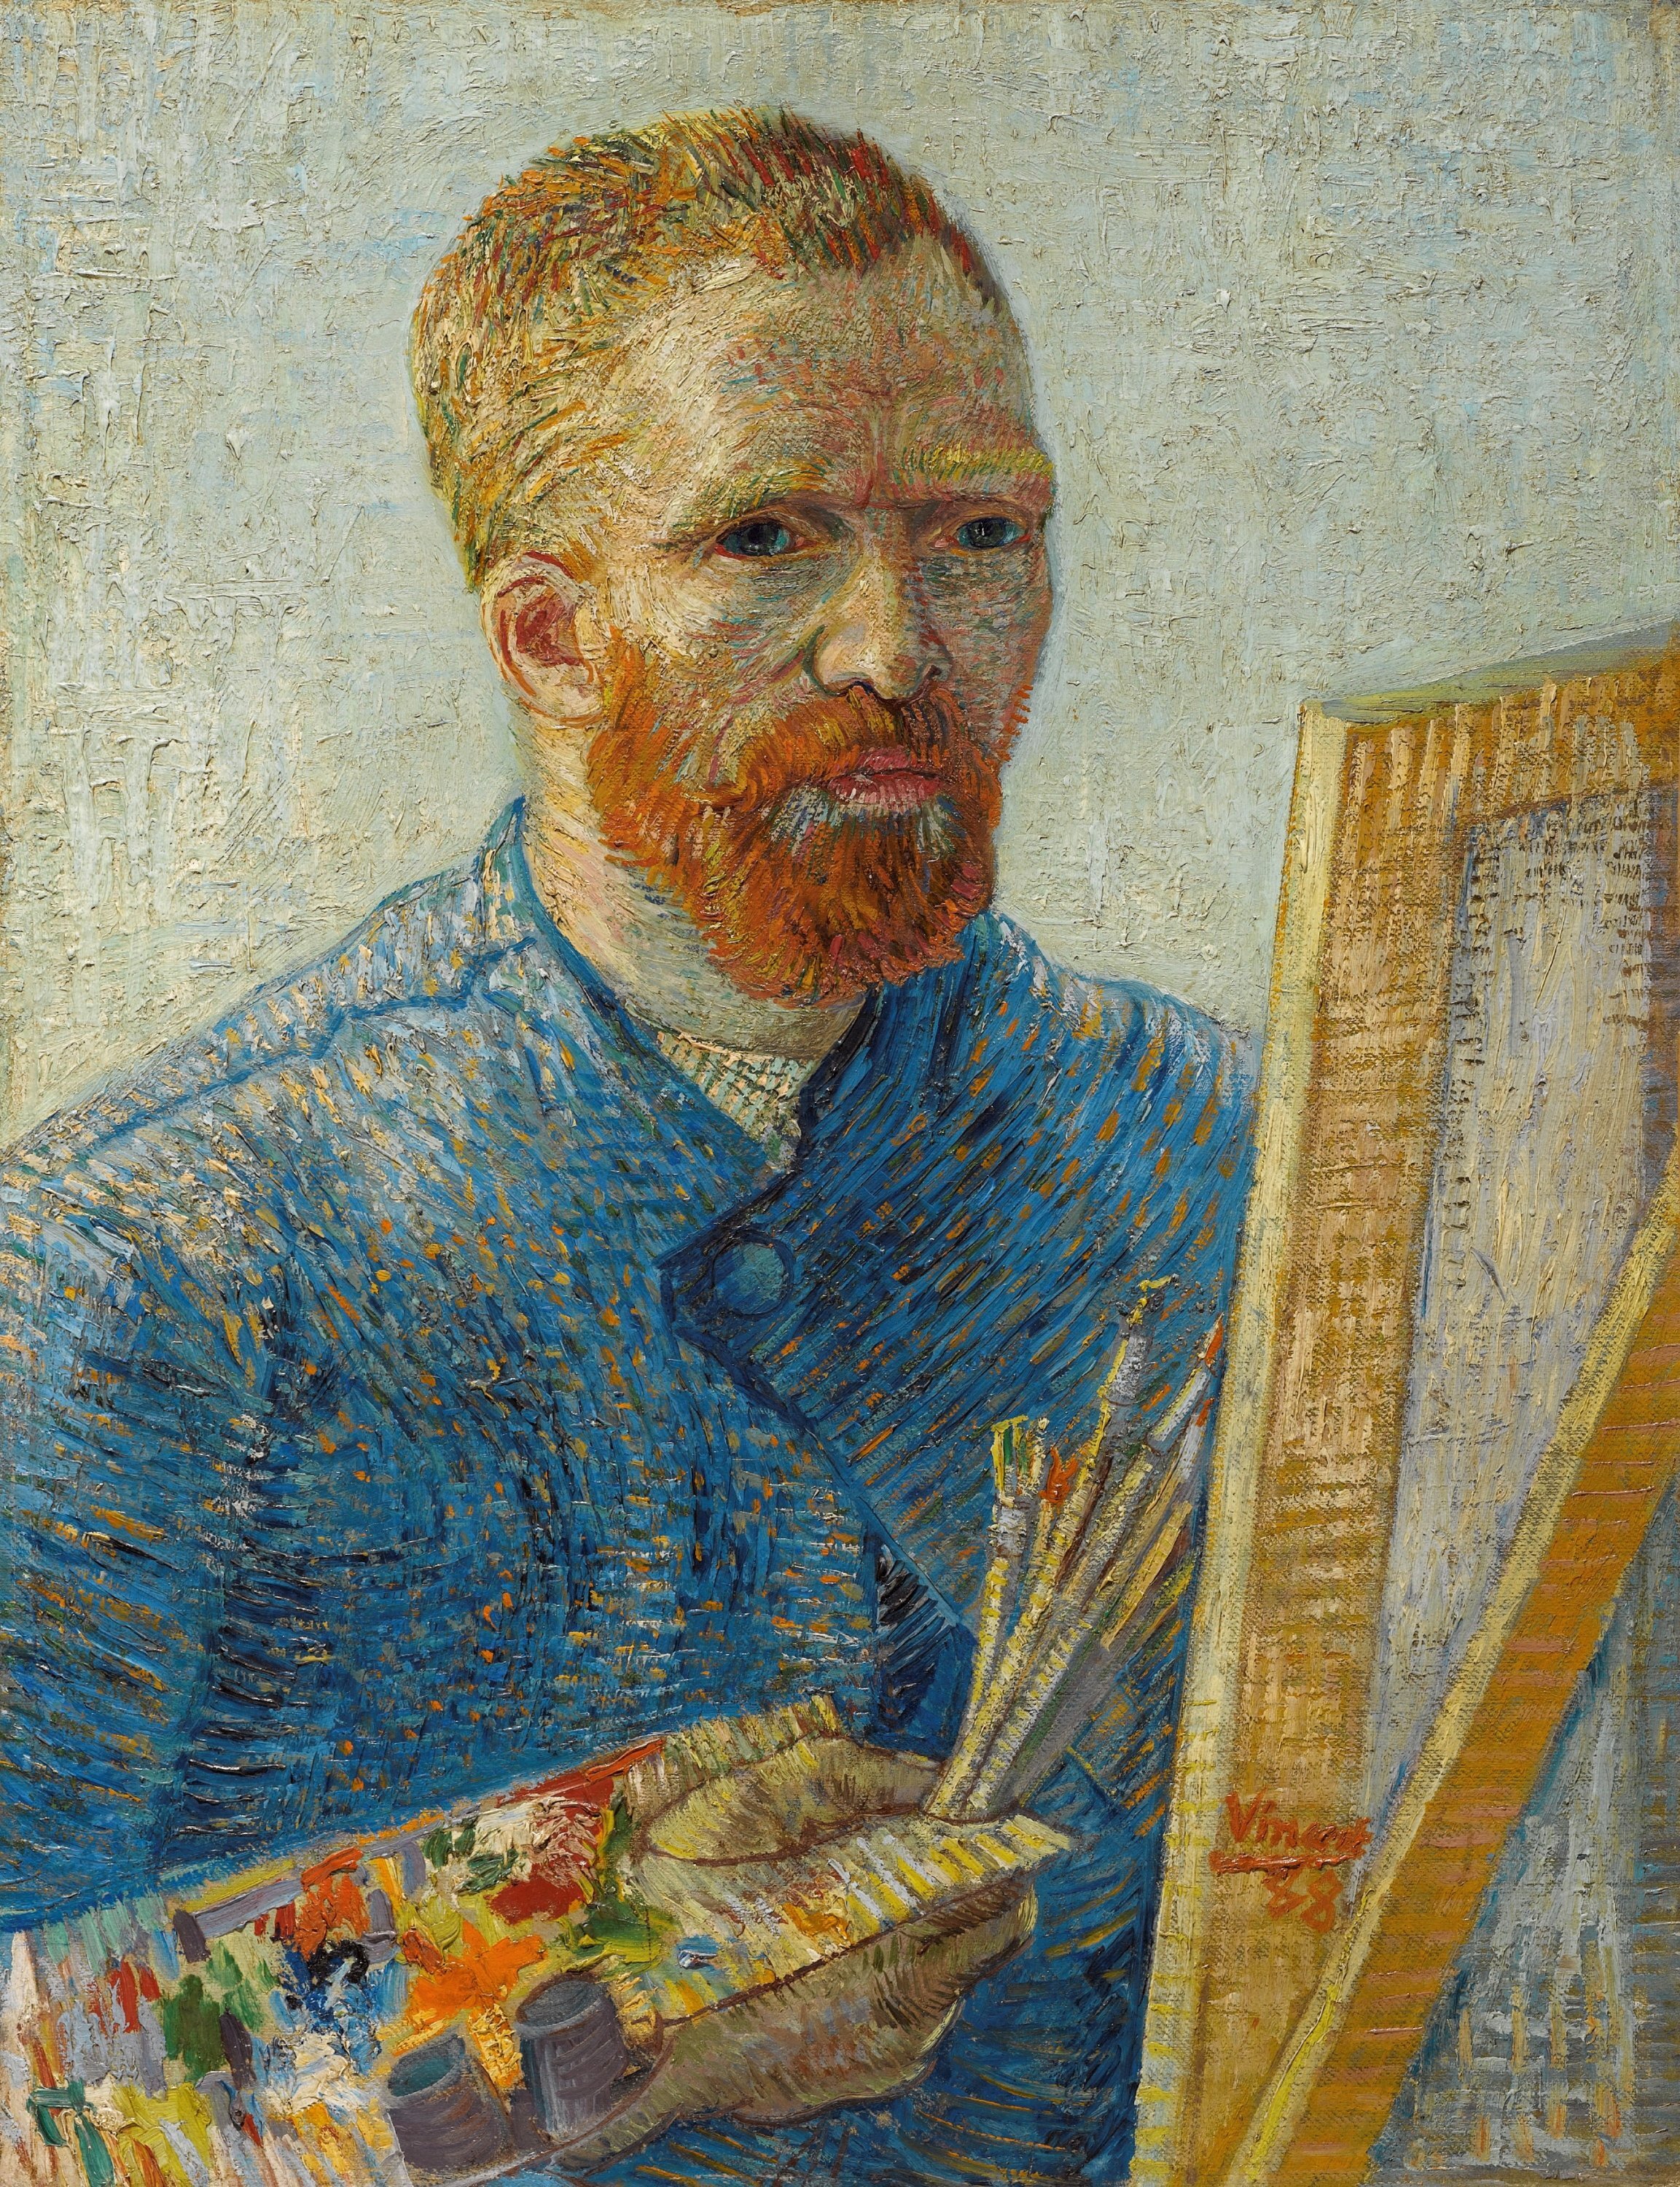 Vincent van Gogh, Self-Portrait as a Painter, 1888-89